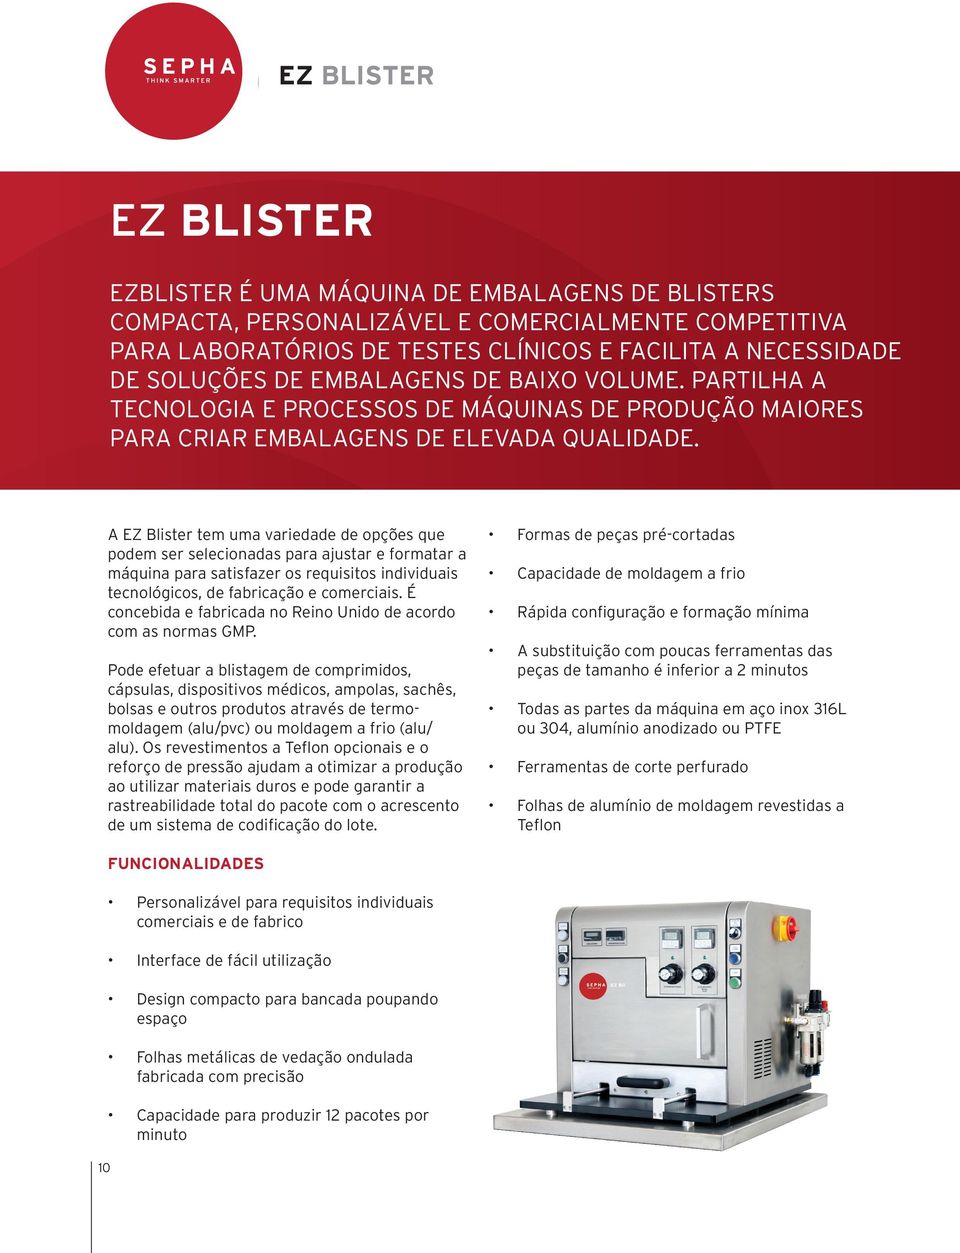 A EZ Blister tem uma variedade de opções que podem ser selecionadas para ajustar e formatar a máquina para satisfazer os requisitos individuais tecnológicos, de fabricação e comerciais.